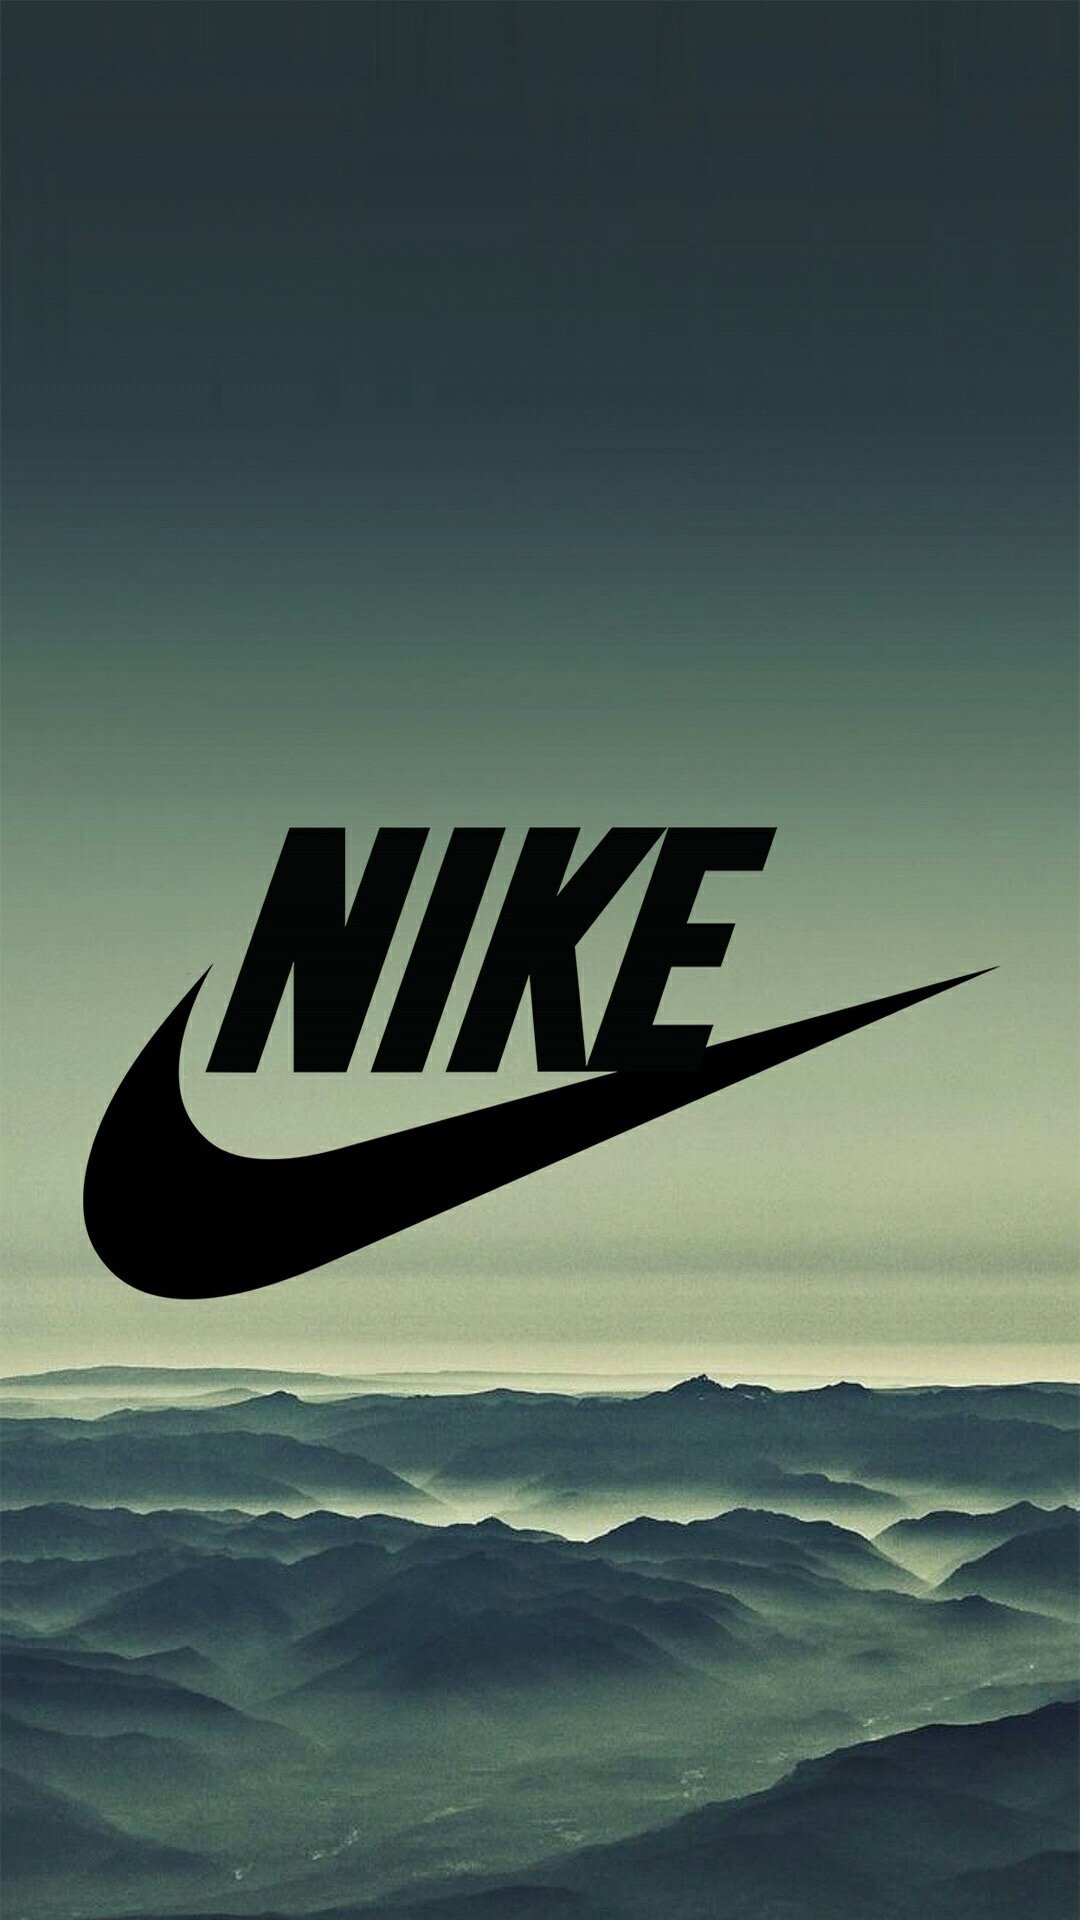 49+] Cool Nike Wallpaper HD - WallpaperSafari